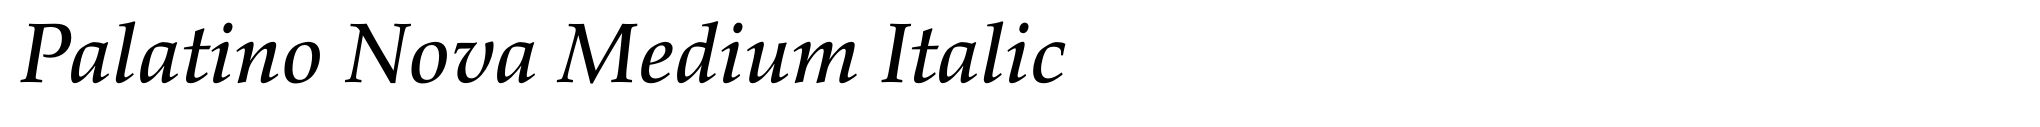 Palatino Nova Medium Italic image